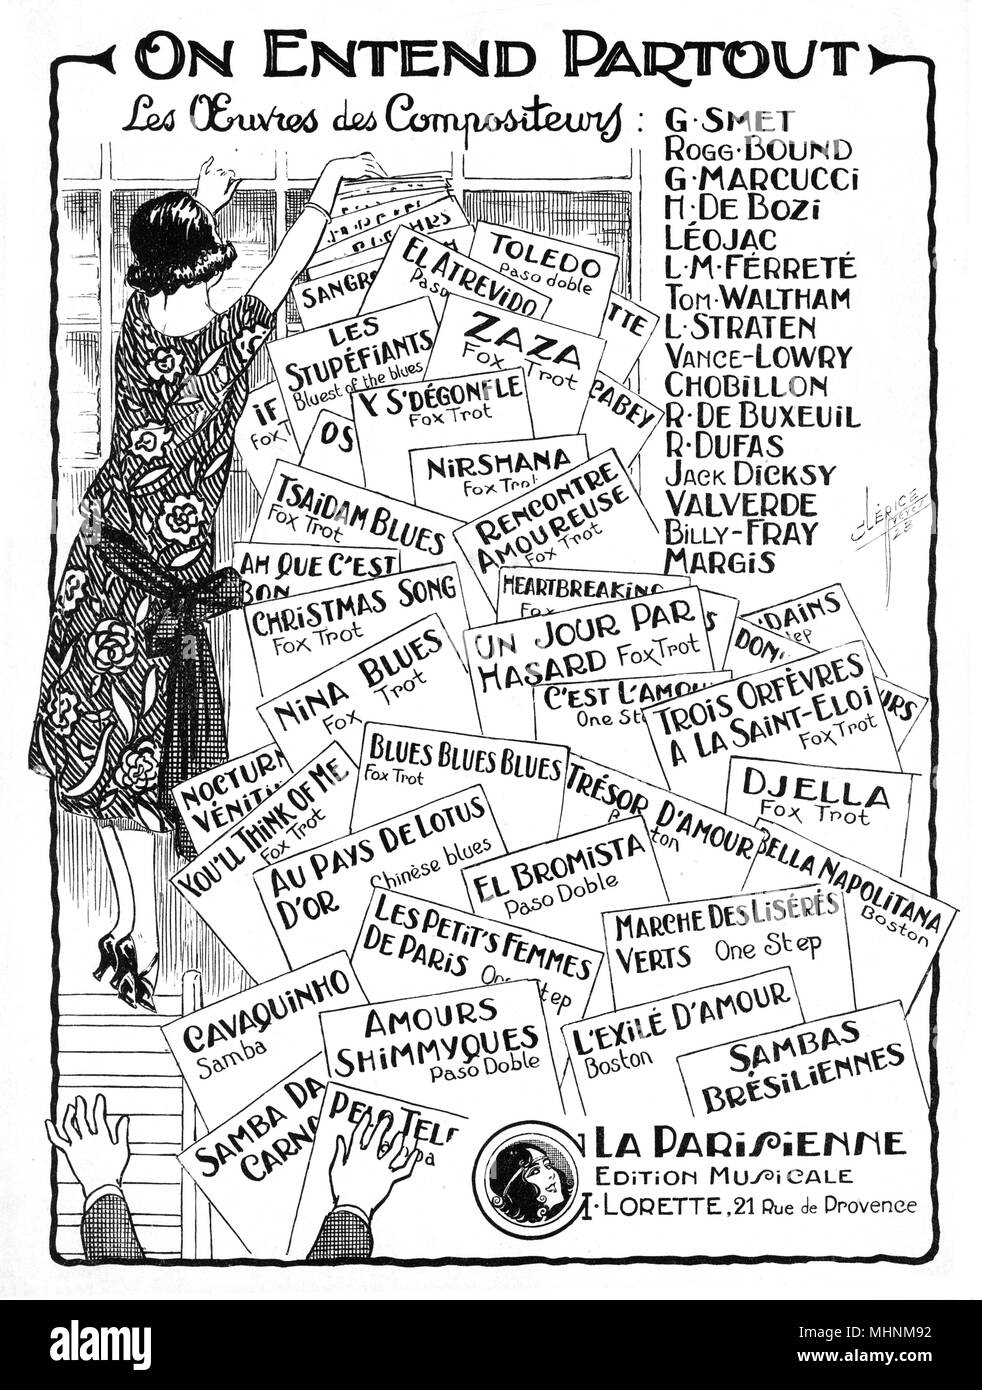 "Entend Partout" - Música cubierta de la hoja. Una ilustración de una mujer francesa y mucho los papeles con las manos en la parte inferior izquierda que quiere recoger los documentos. Fecha: circa siglo xx Foto de stock